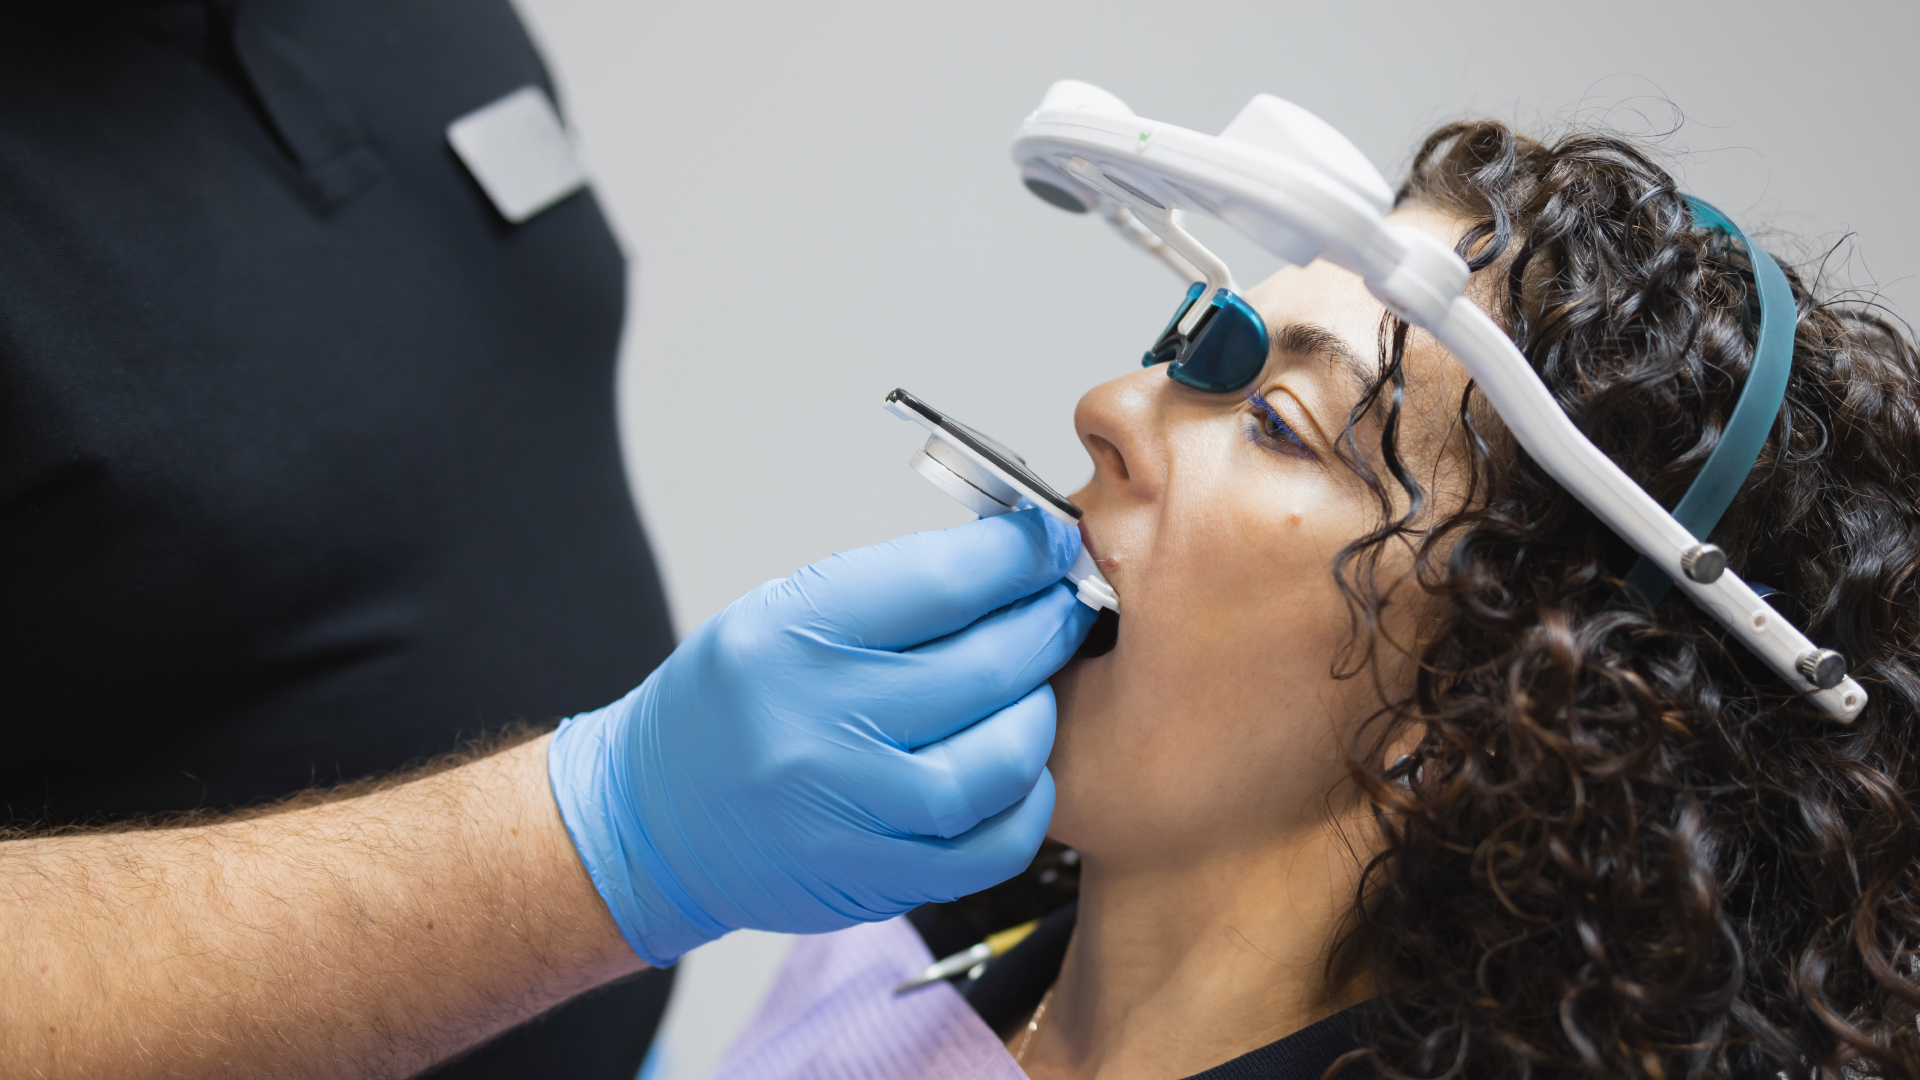 Un chirurgien dentiste mensurant la classe de malocclusion dentaire d’une patiente